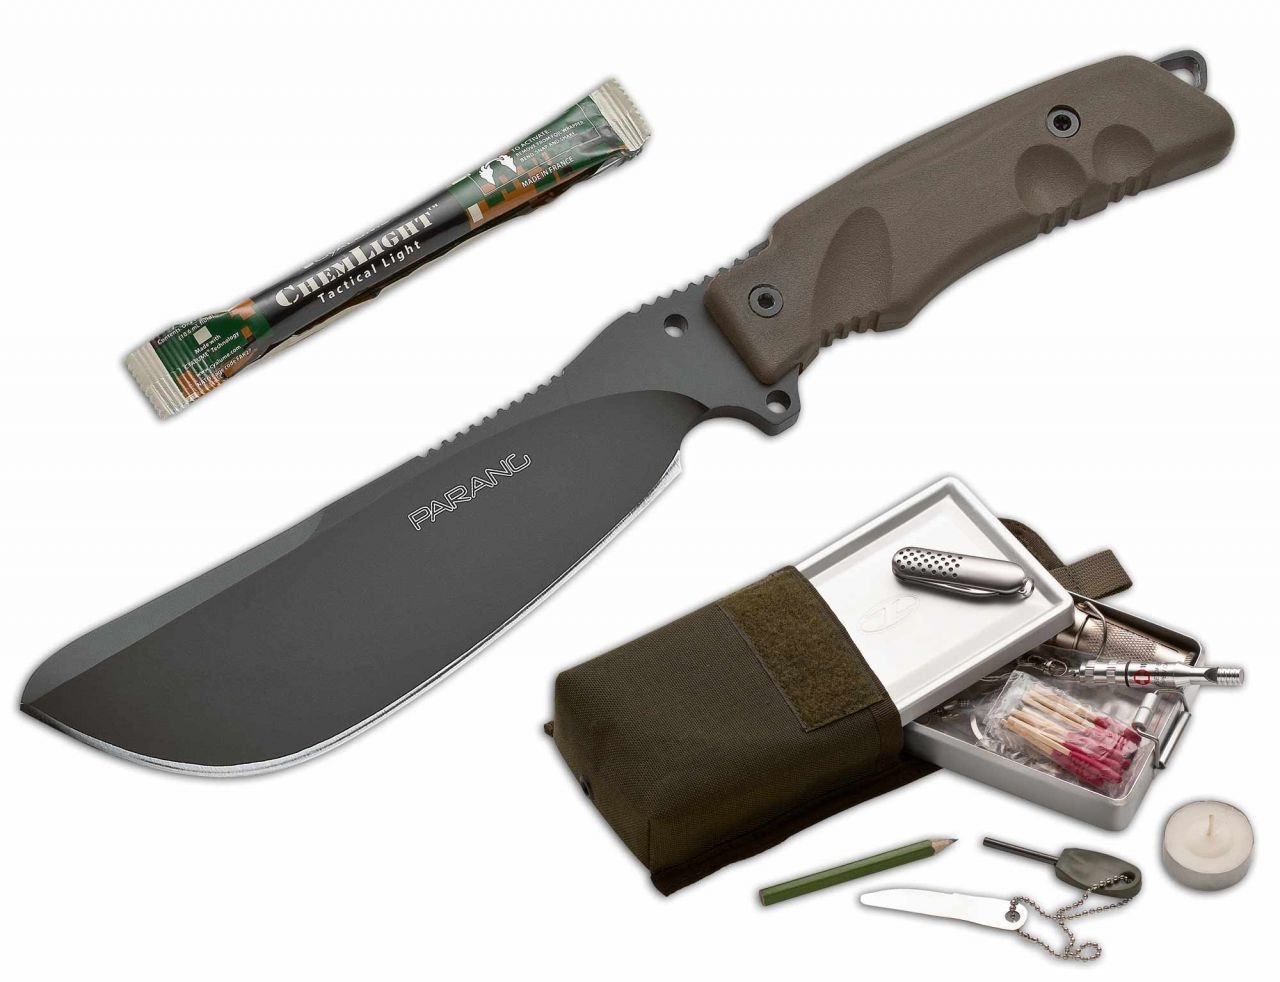 Produktbild von Fox Knives FKMD Parang - Survivalmesser, Outdoormesser, Machete